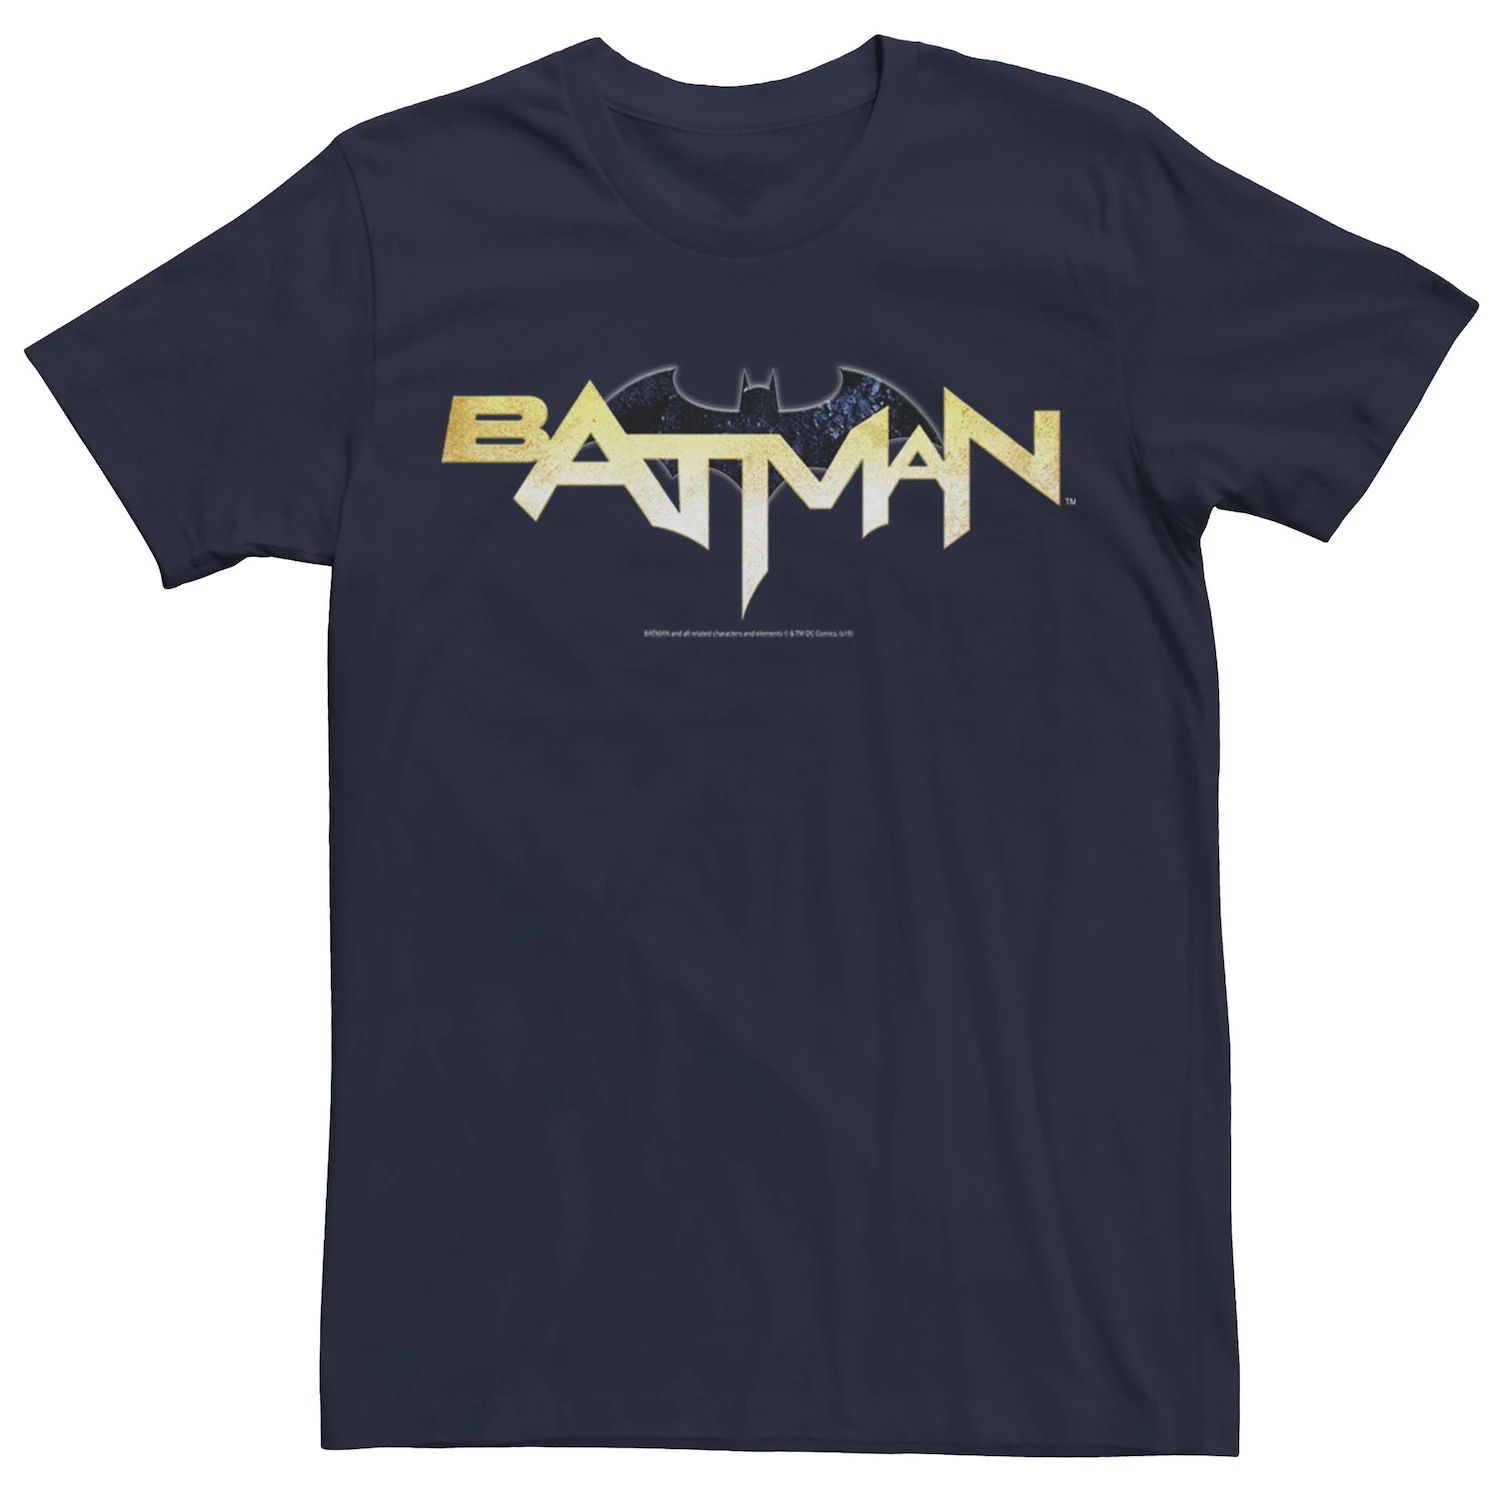 Мужская футболка Batman Modern с текстовым логотипом на груди, Синяя DC Comics, синий